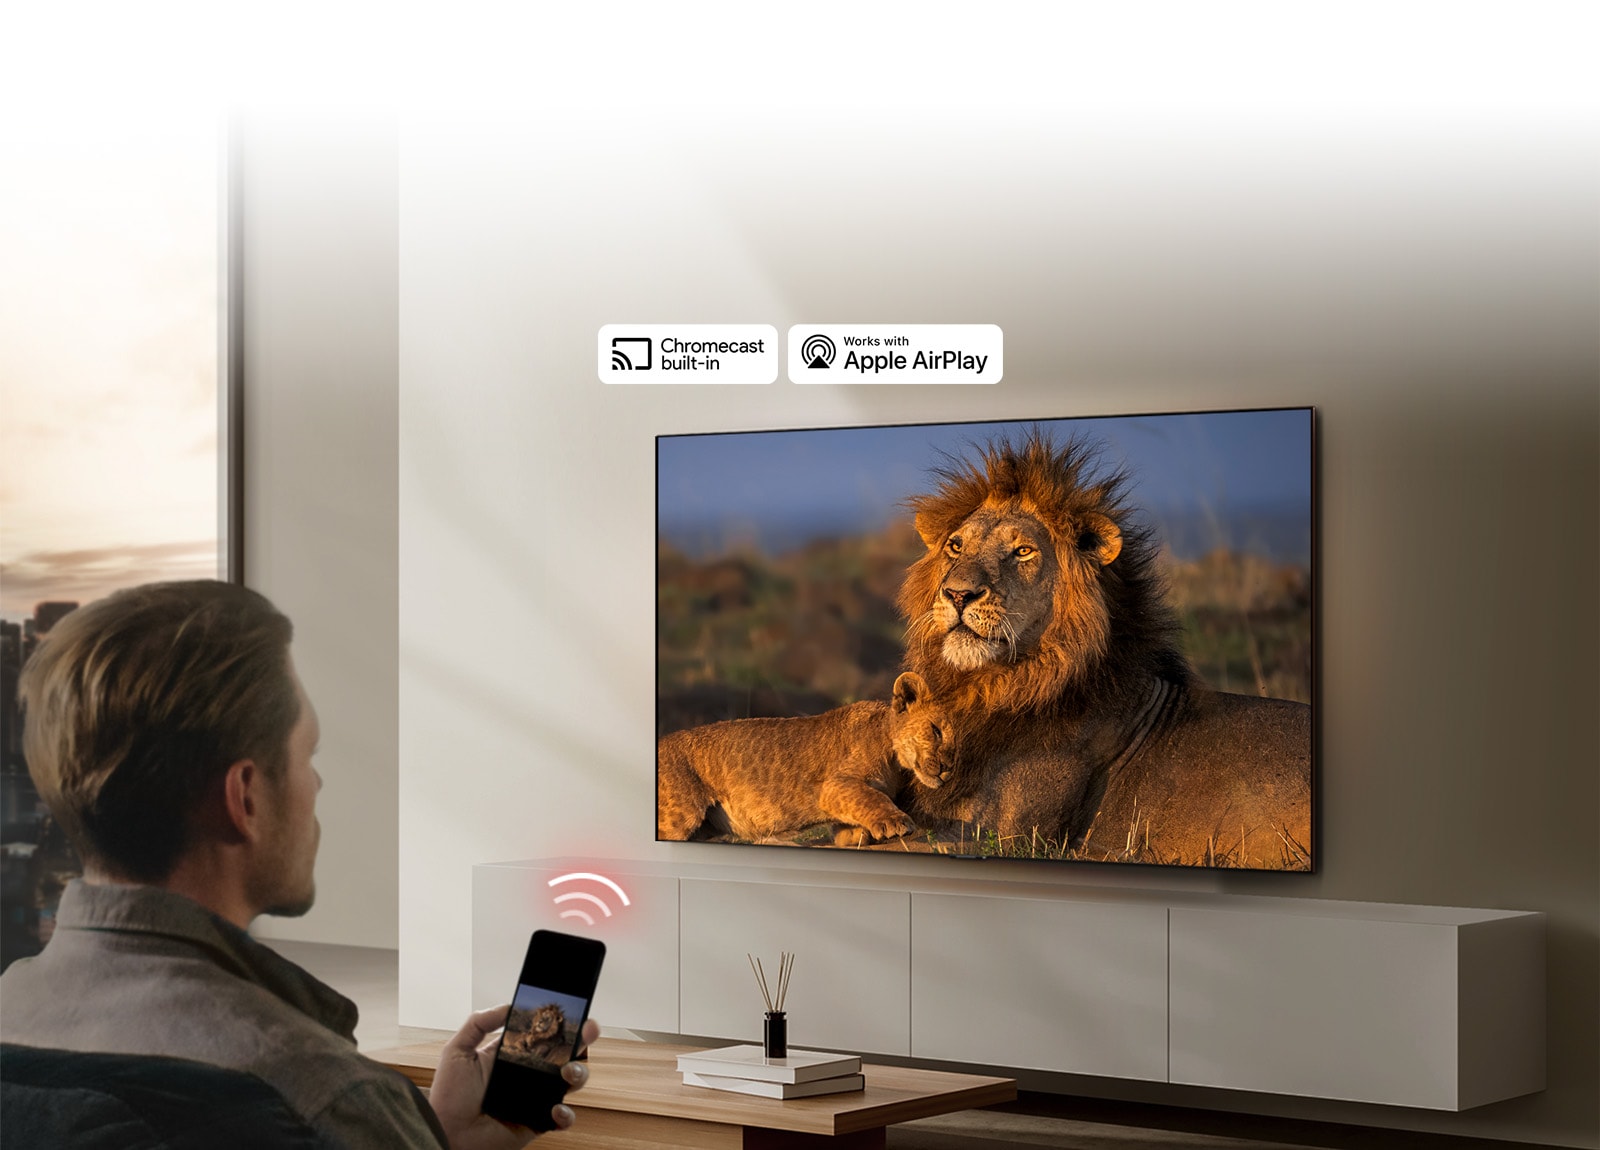 Une LG TV montée sur un mur dans un salon, affichant un lion et un lionceau. Un homme est assis au premier plan, un smartphone à la main affichant la même image des lions. Un graphique représentant trois barres incurvées rouge néon est affiché juste au-dessus du smartphone pointant vers la TV.